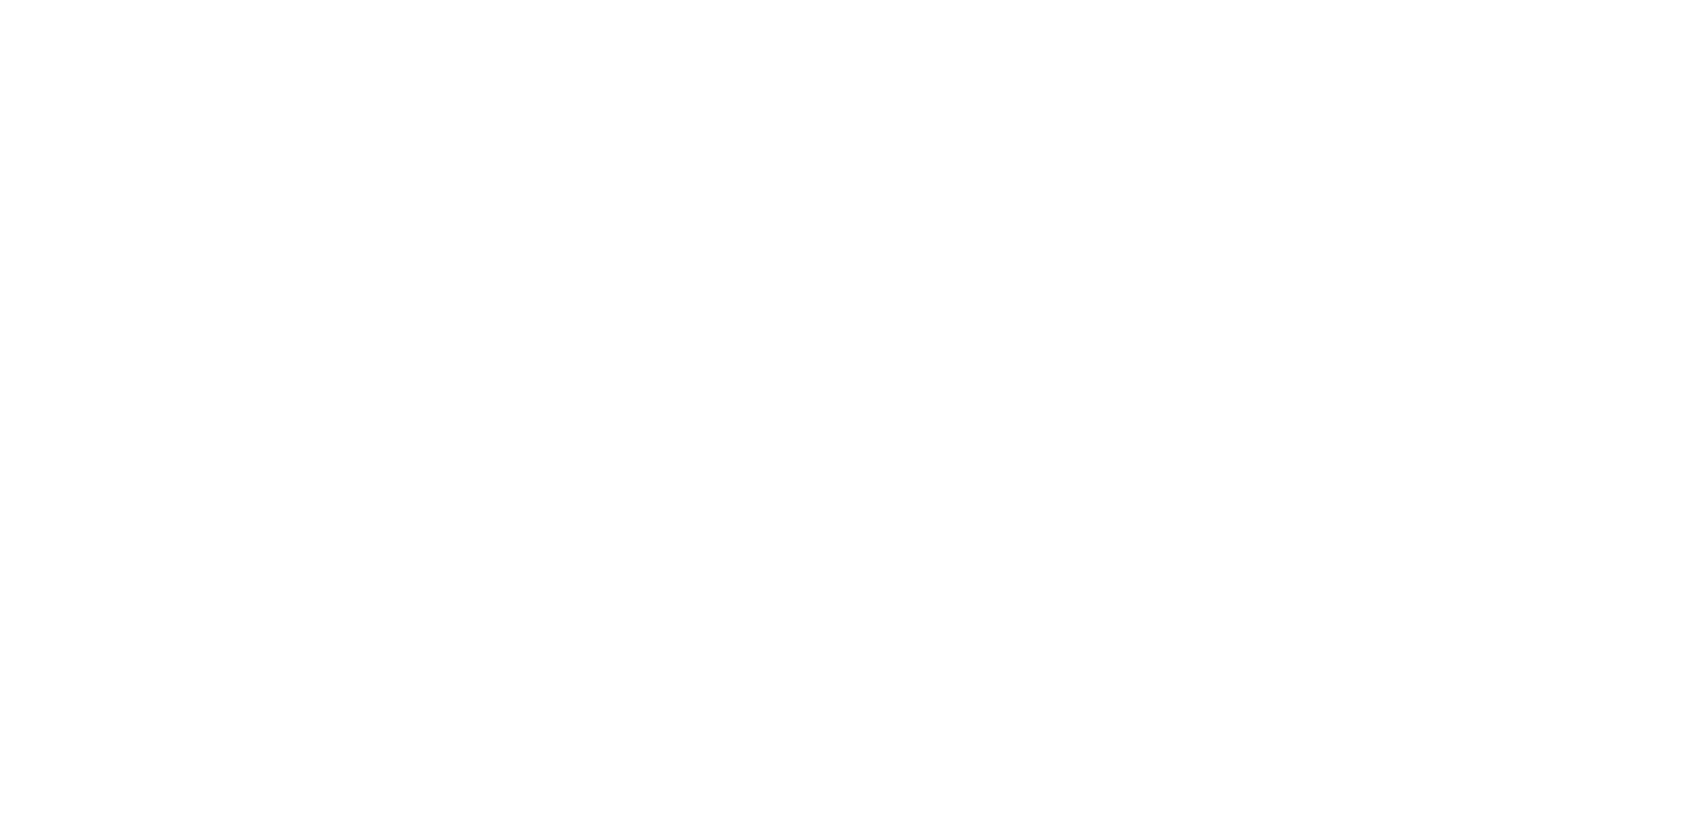 Nuff_data_invert_02